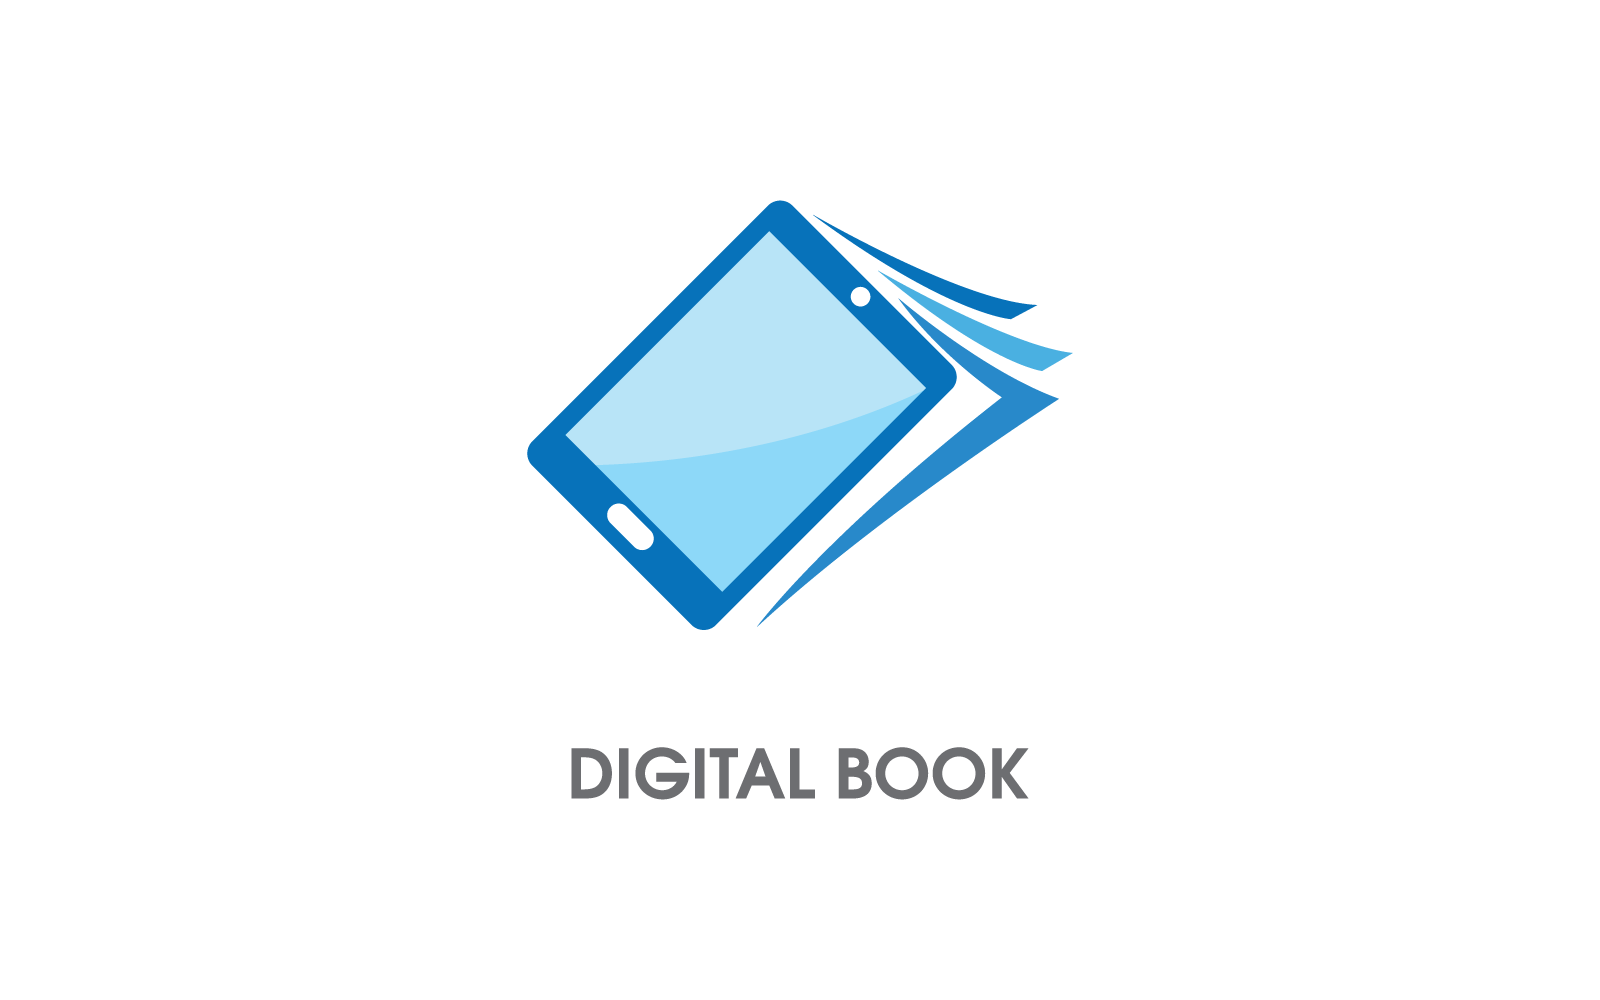 E- book modern digital book logo design vector